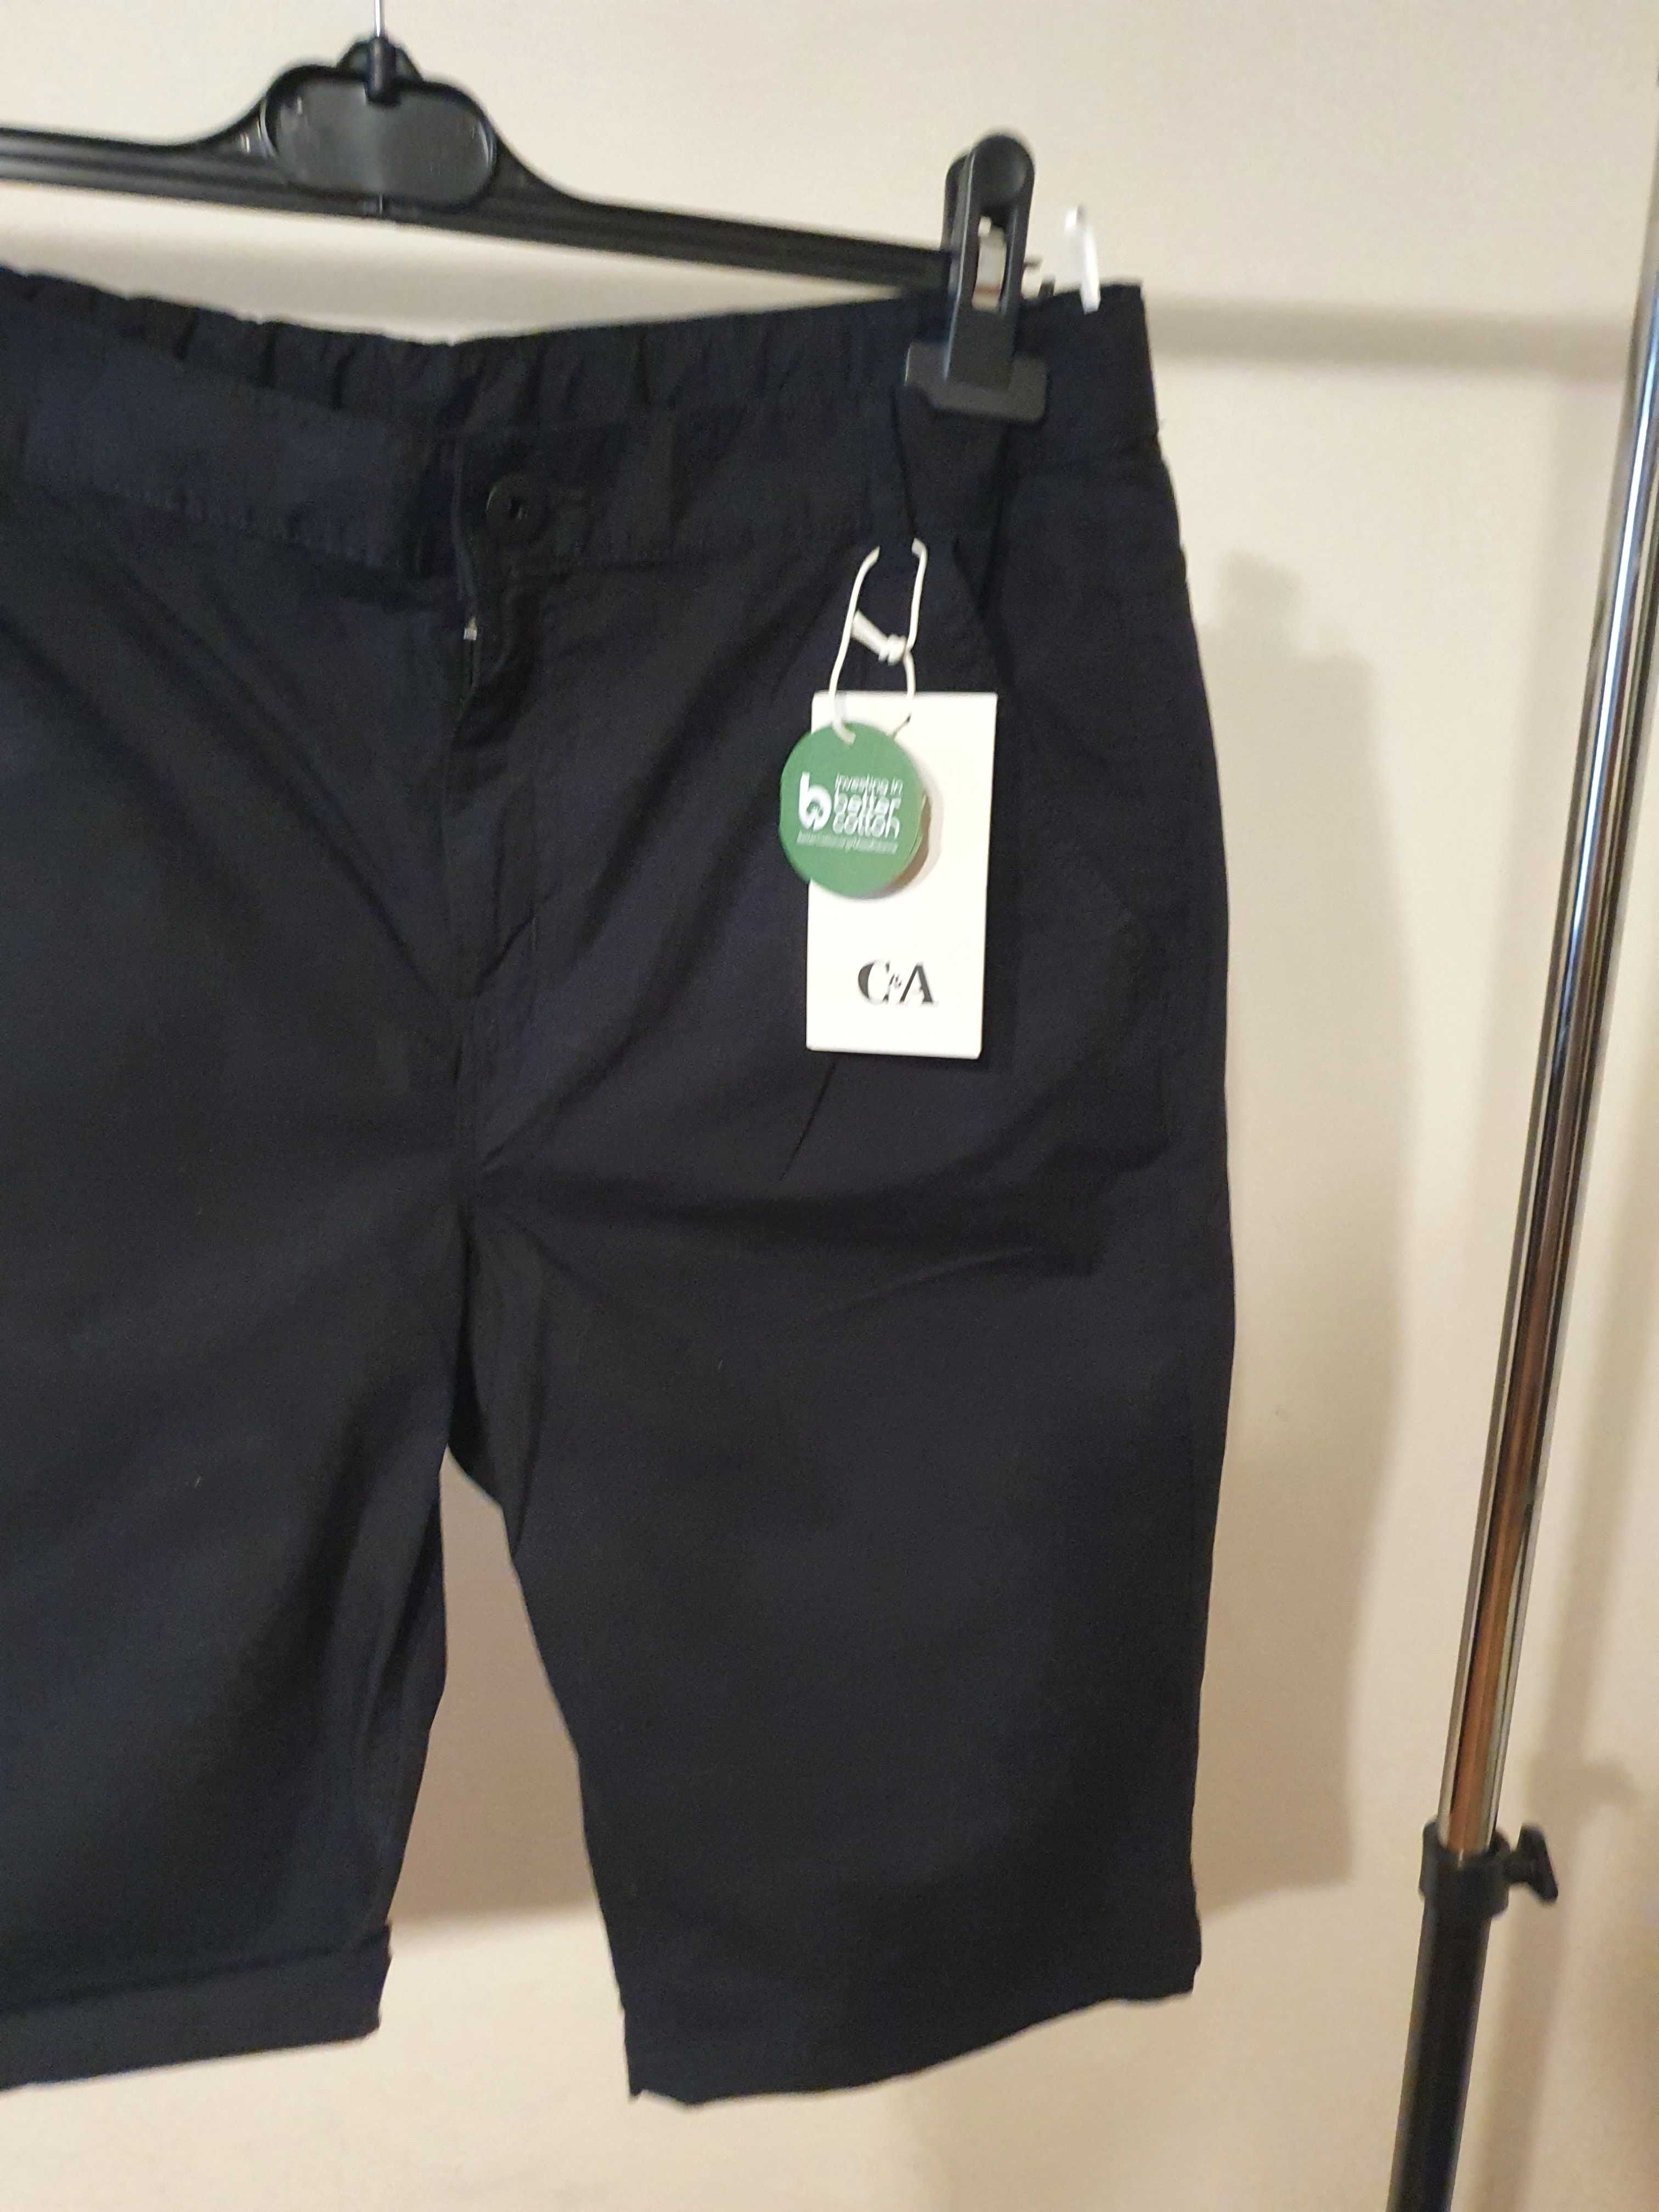 Pantaloni scurti / bermude baieti C&A mar 14+ (182 cm) negri